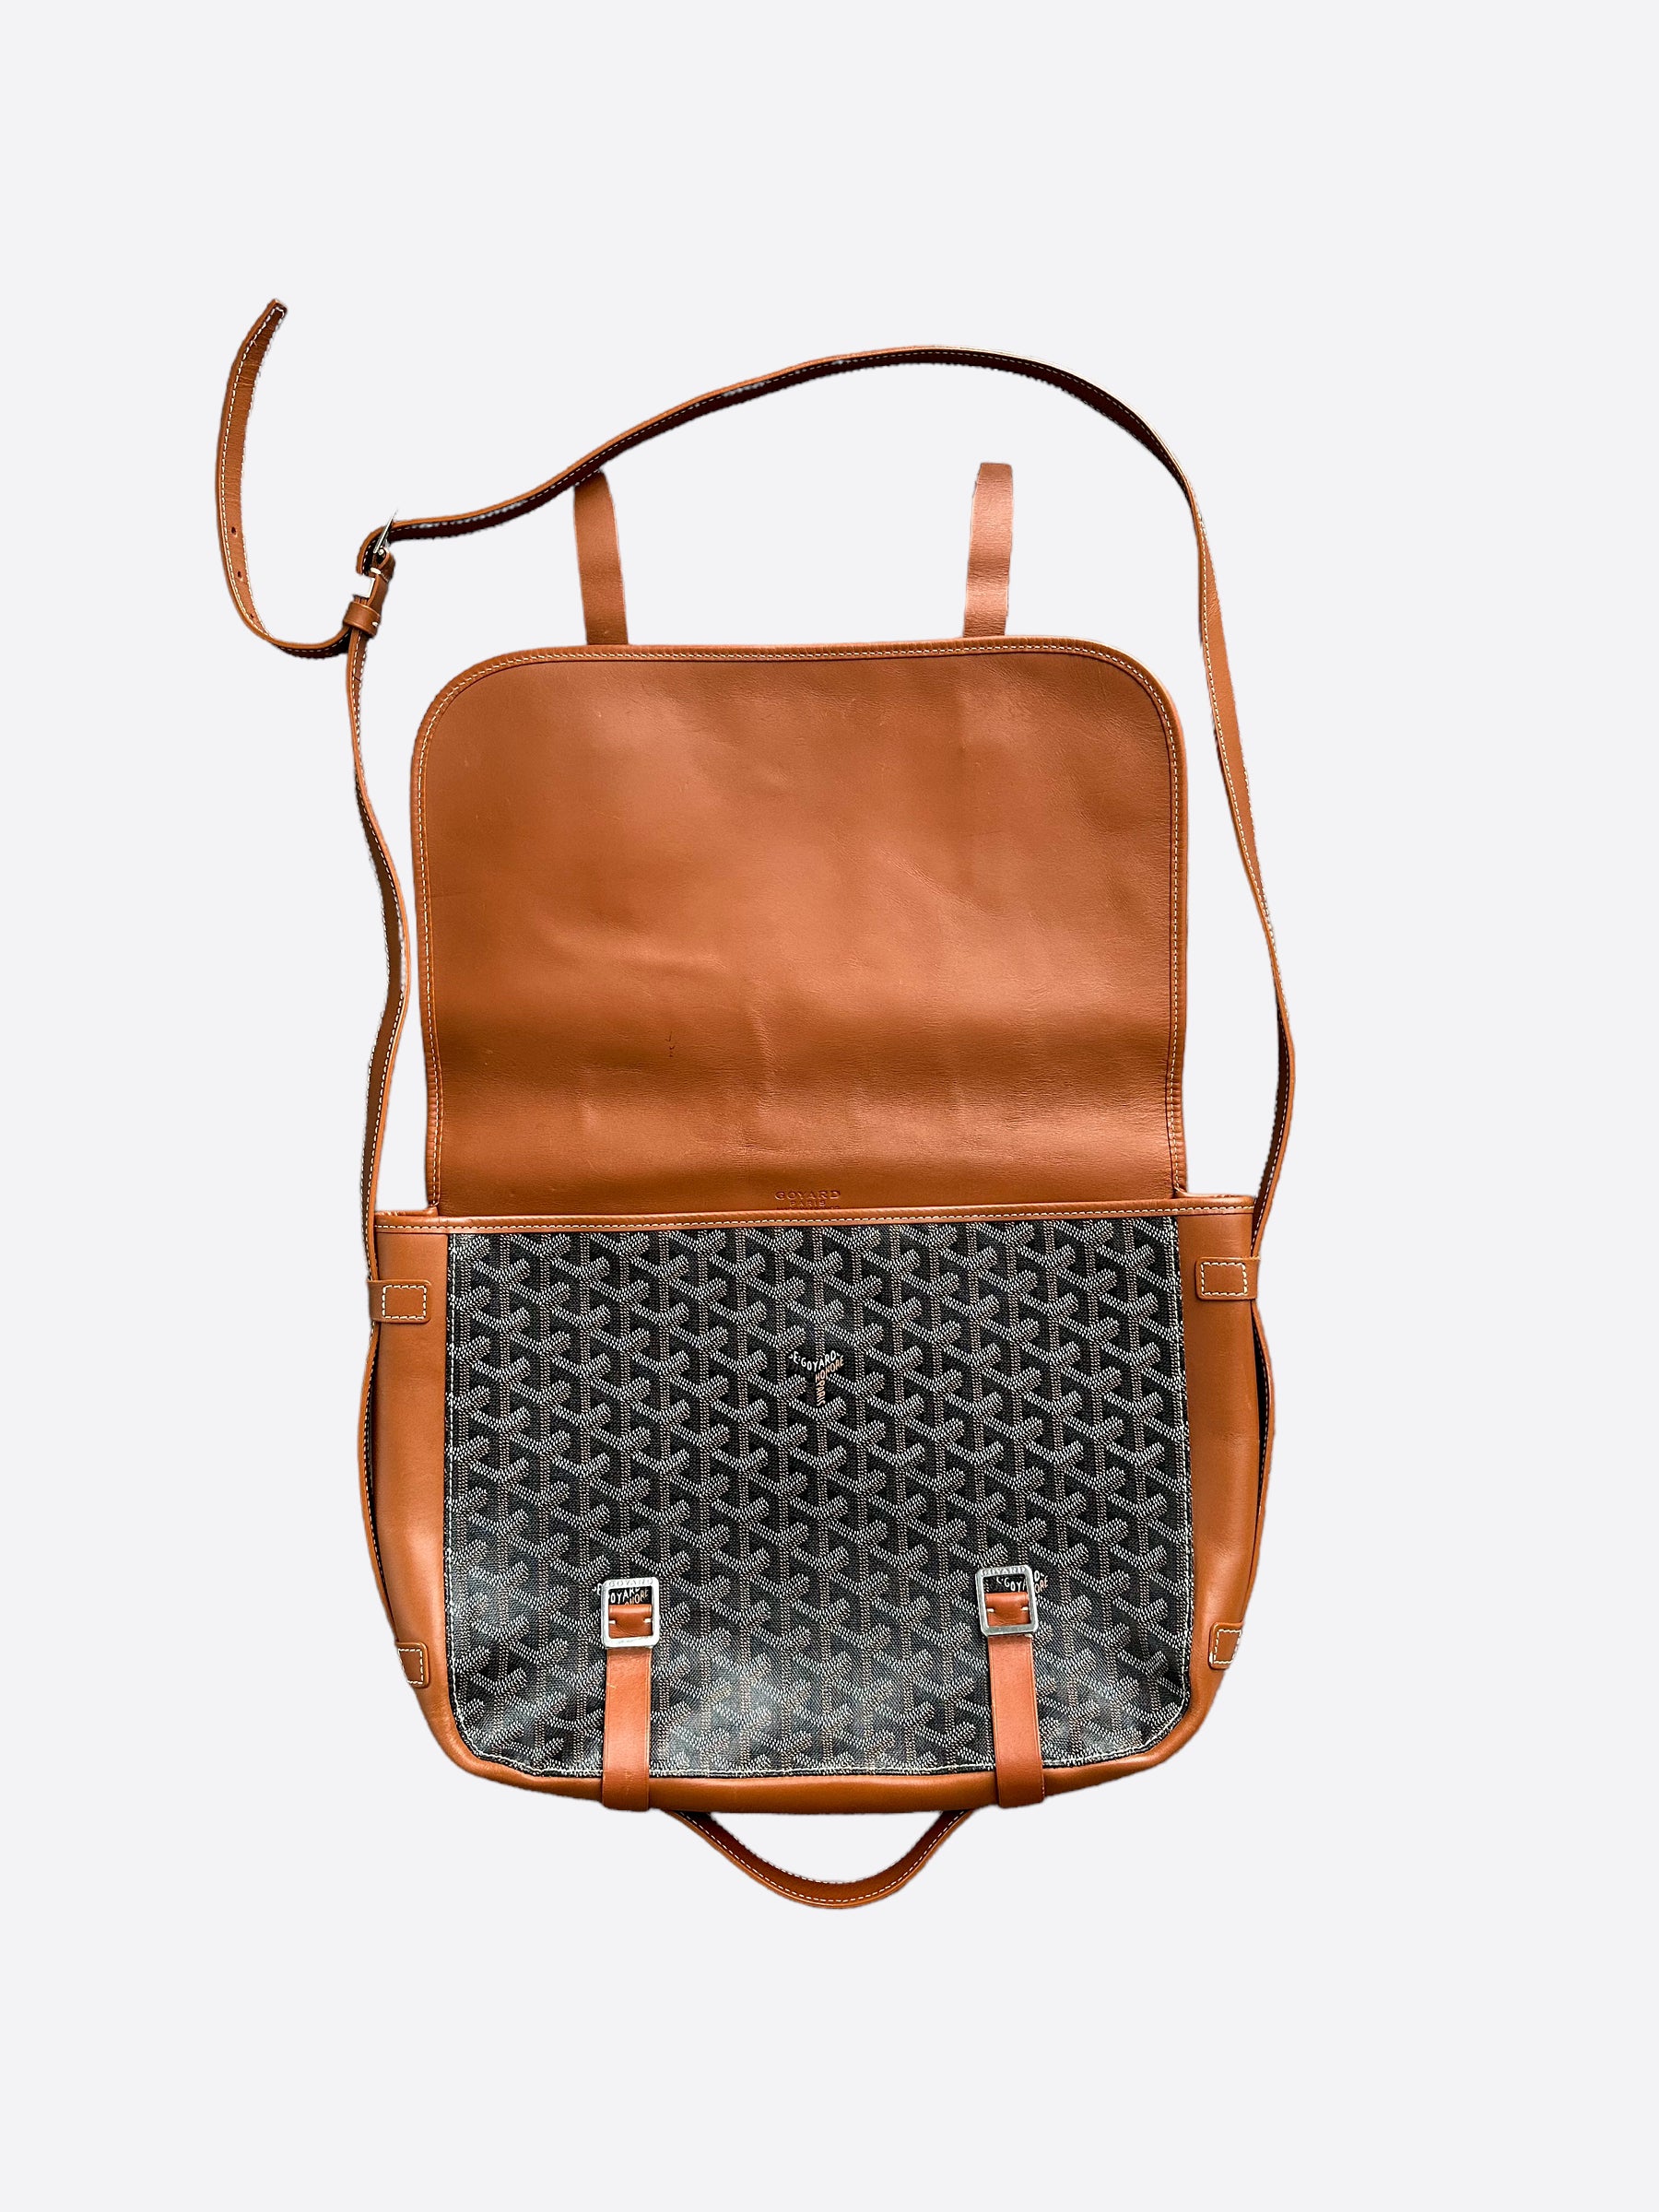 Sac-Belvedere-PM-Orange - Goyard  Goyard bag, Bags, Canvas shoulder bag